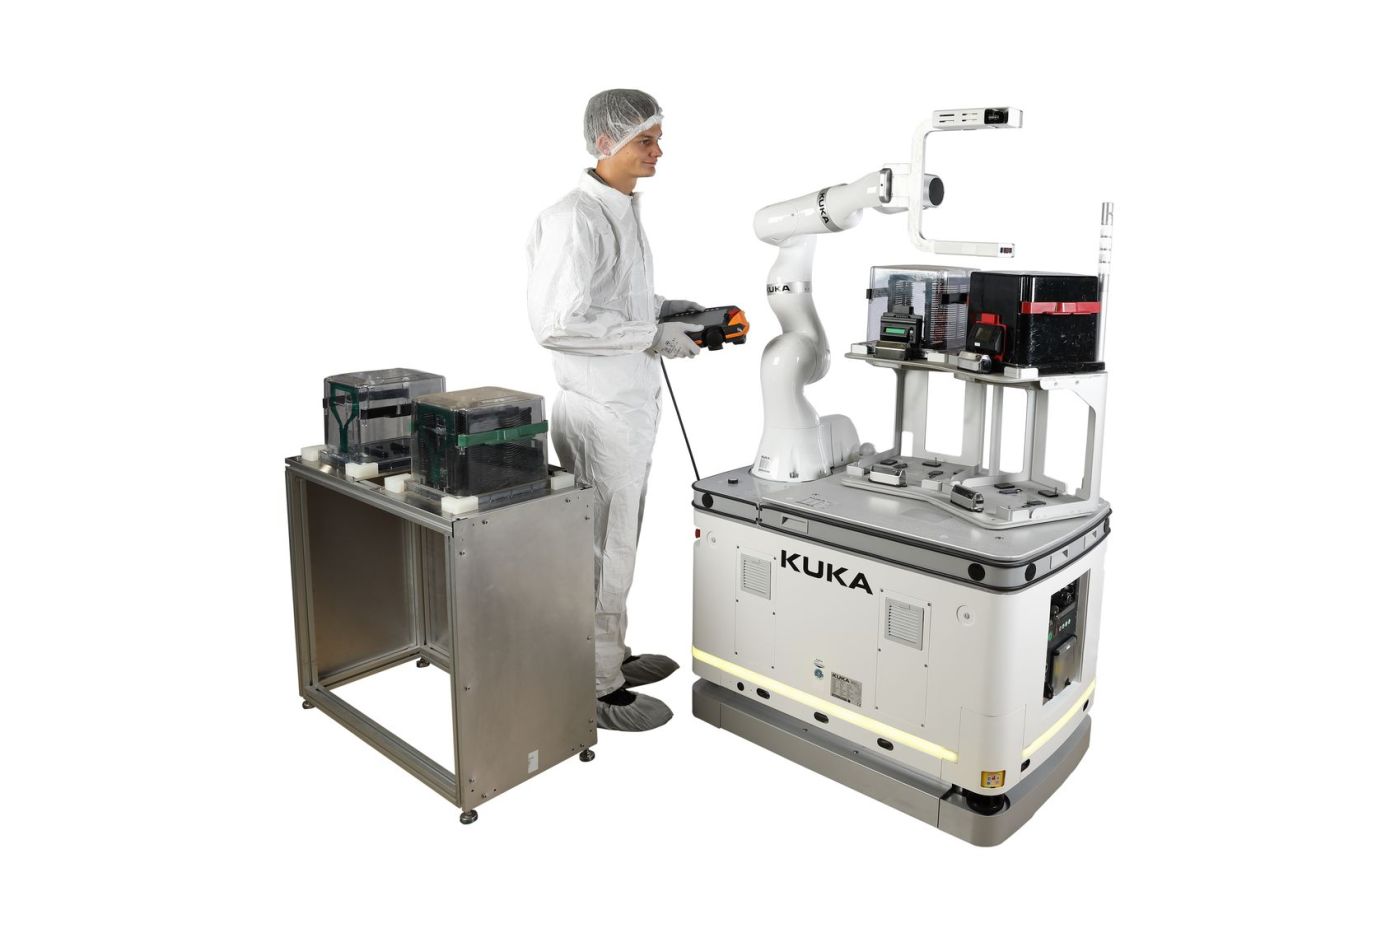 Mit der Wafer Handling Solution hat Kuka einen mobilen Roboter für den Wafer-Transport zwischen den einzelnen Arbeitsstationen entwickelt.